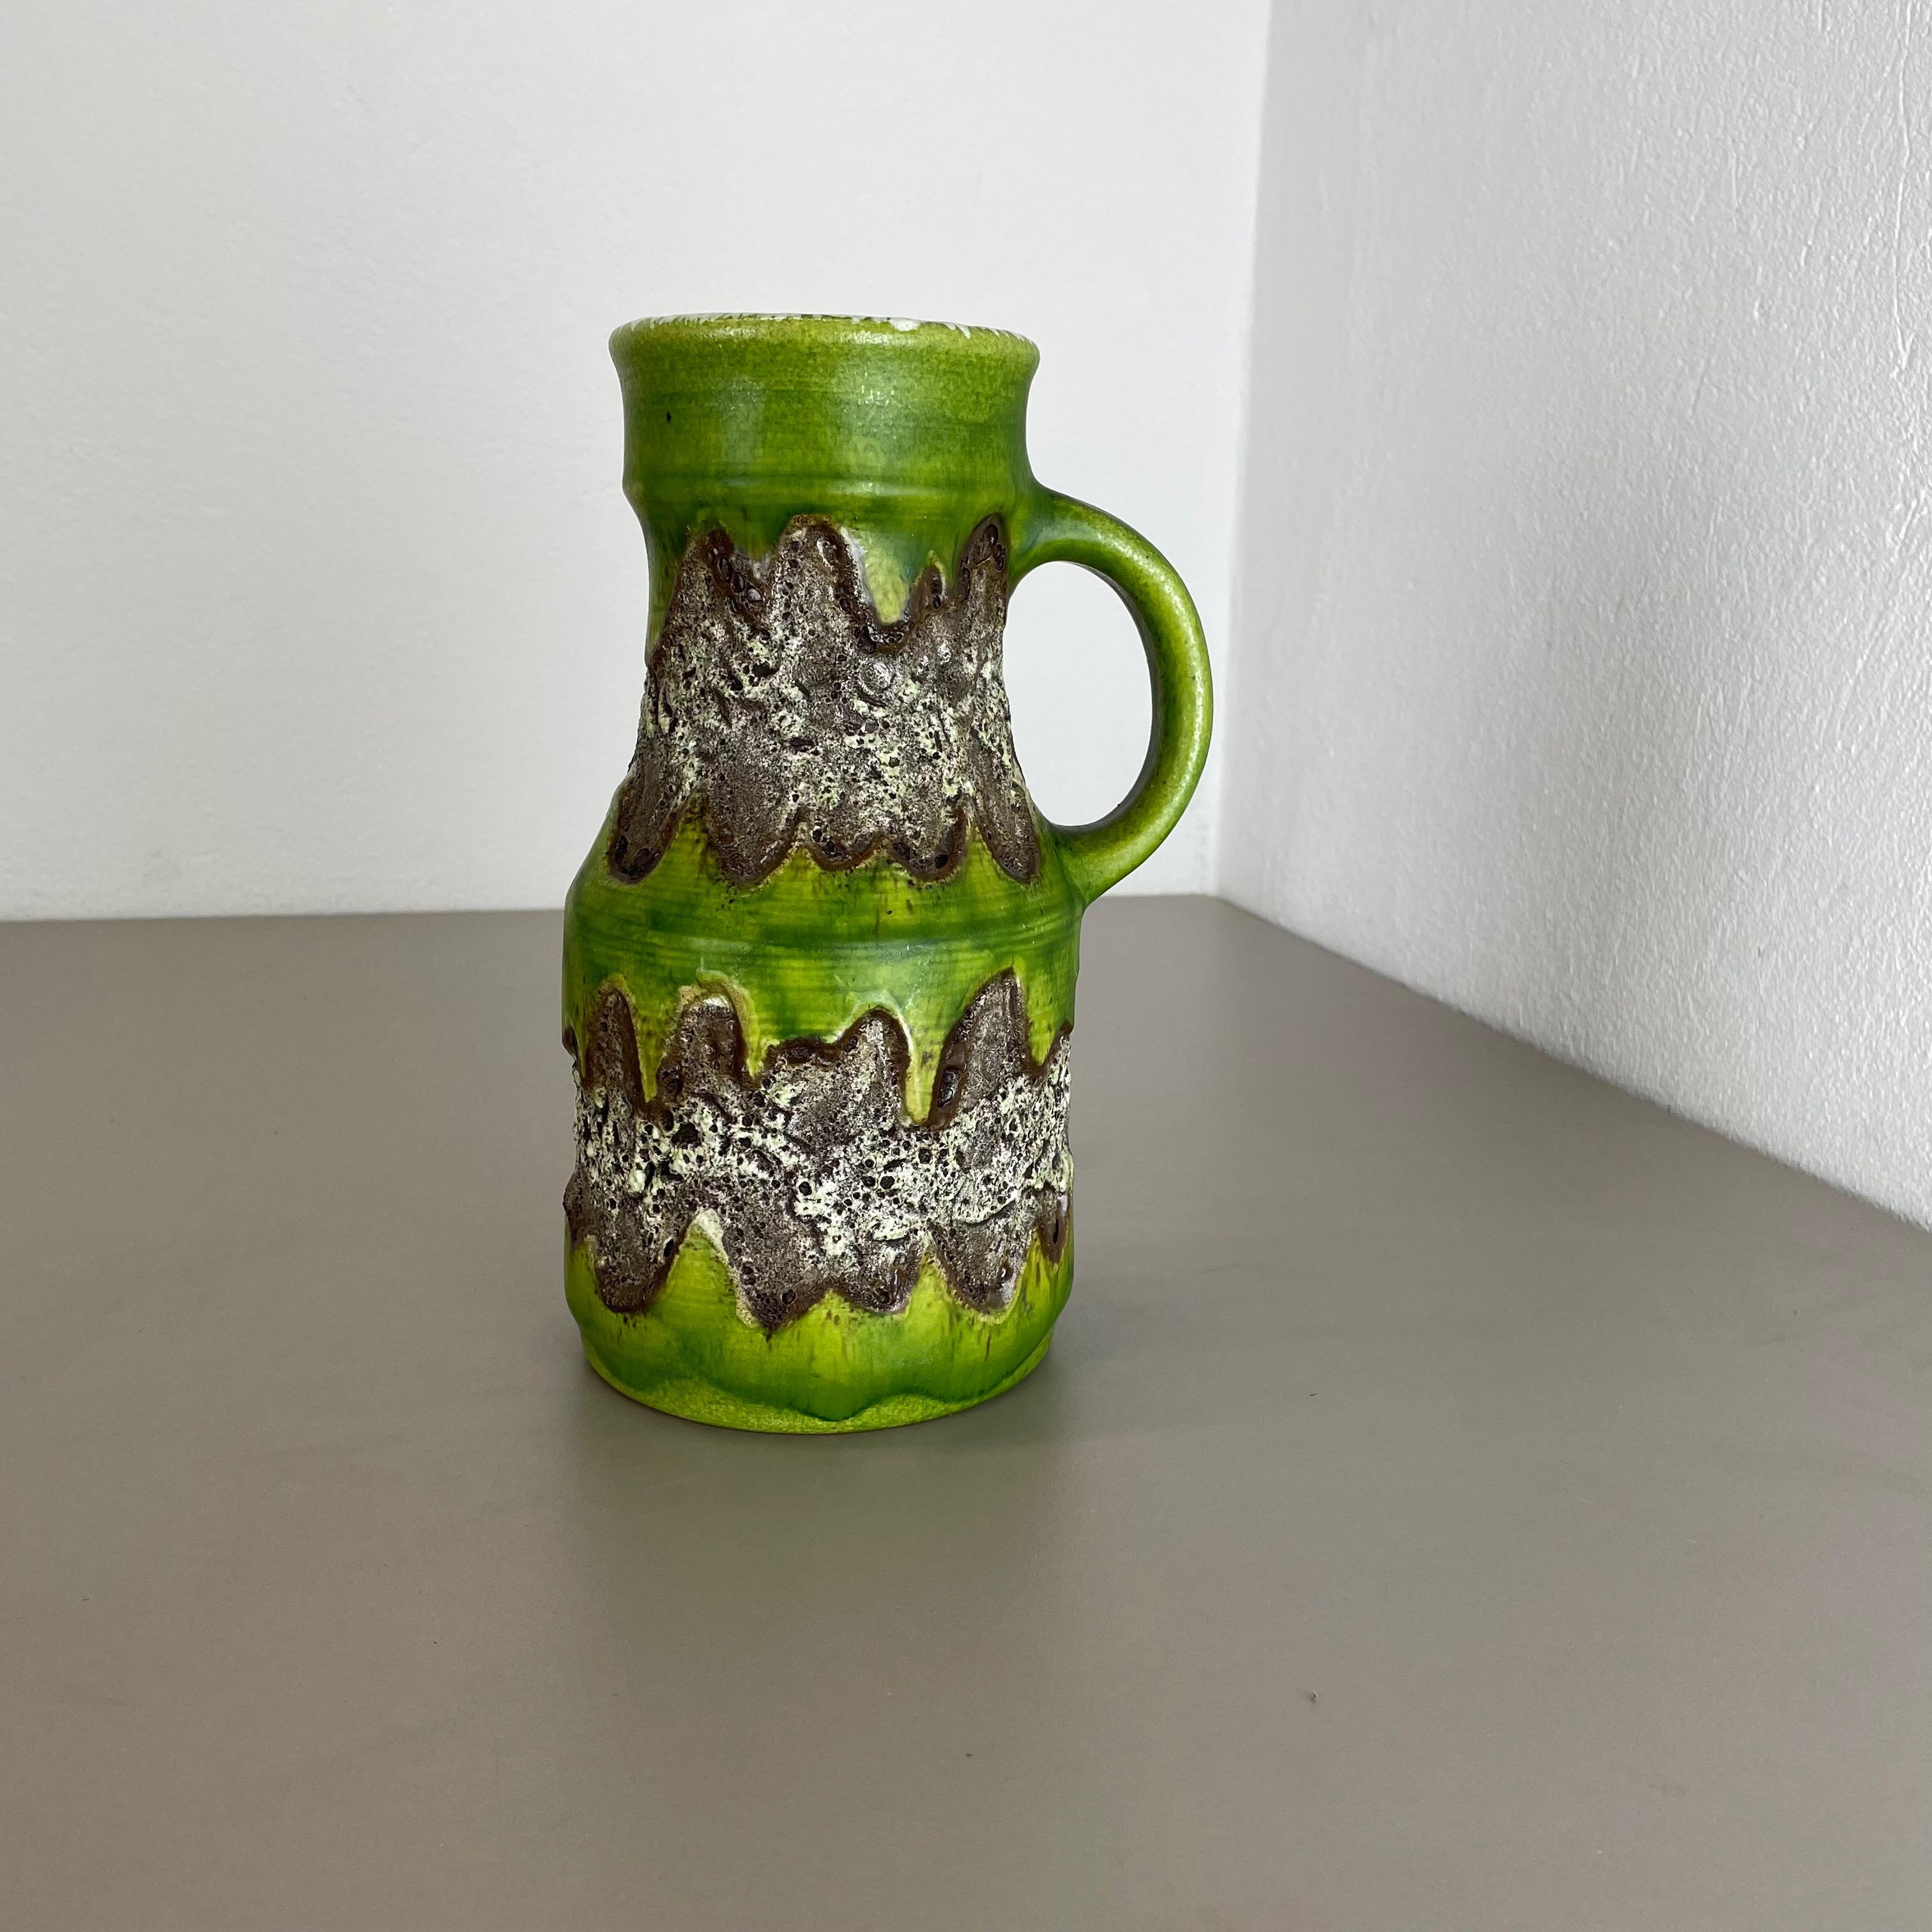 Mid-Century Modern Rare Green Brutalist Fat Lava Ceramic Vases by Dümler and Breiden Germany, 1970s For Sale